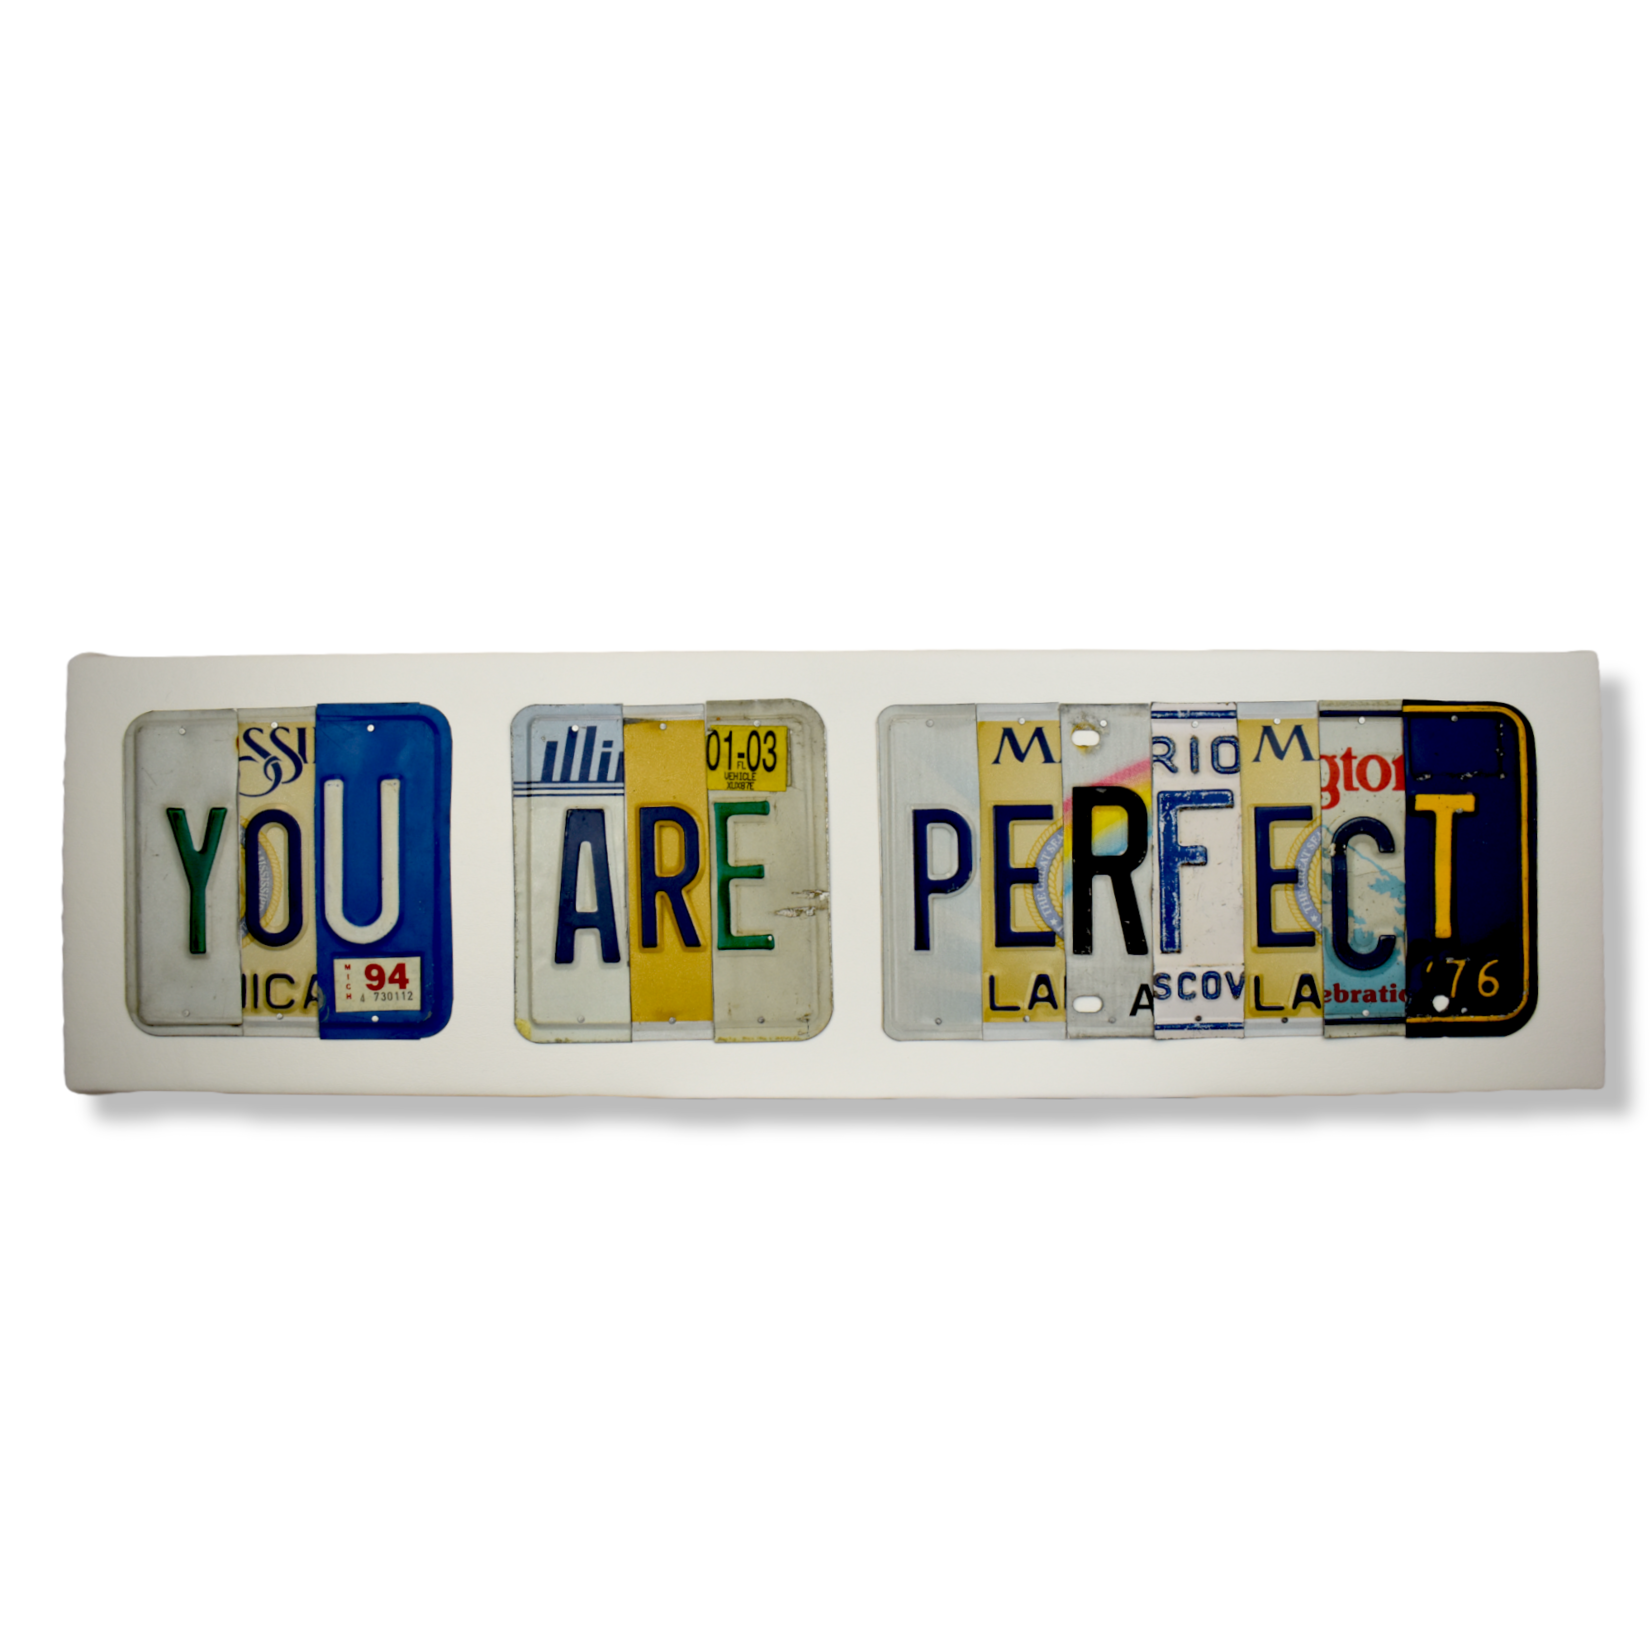 Matt Black You Are Perfect License Plates